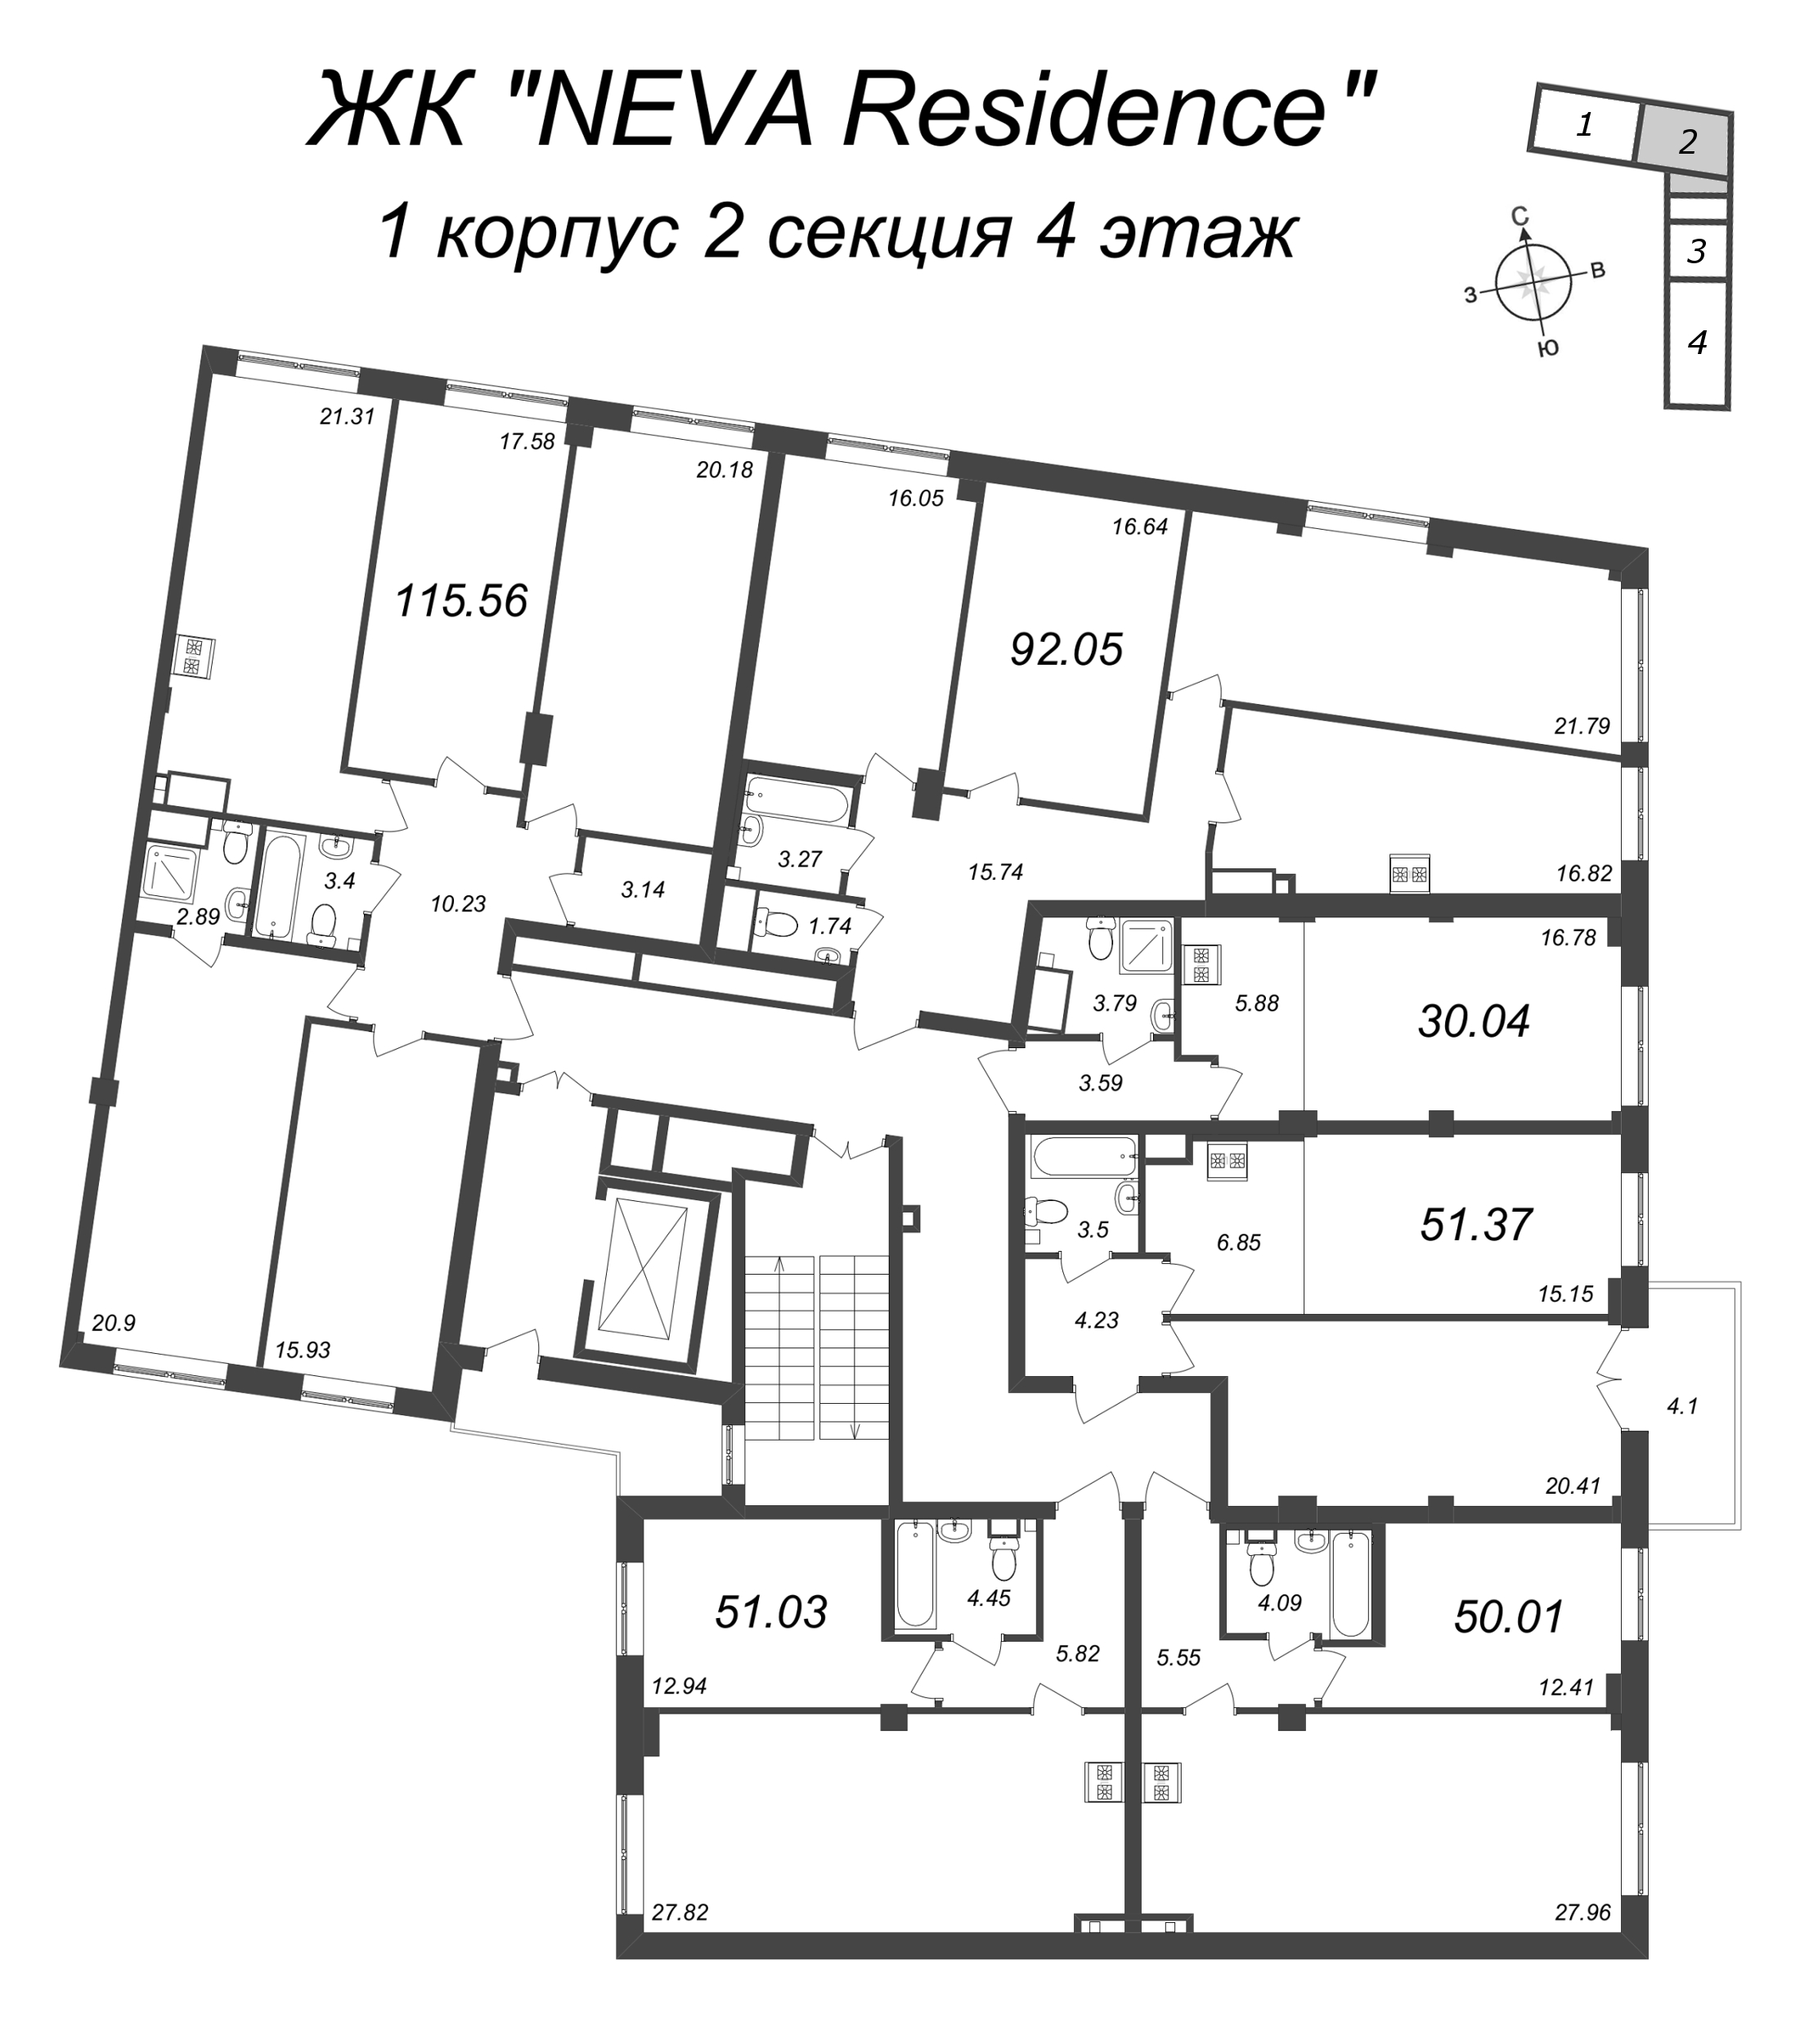 2-комнатная (Евро) квартира, 51.03 м² в ЖК "Neva Residence" - планировка этажа